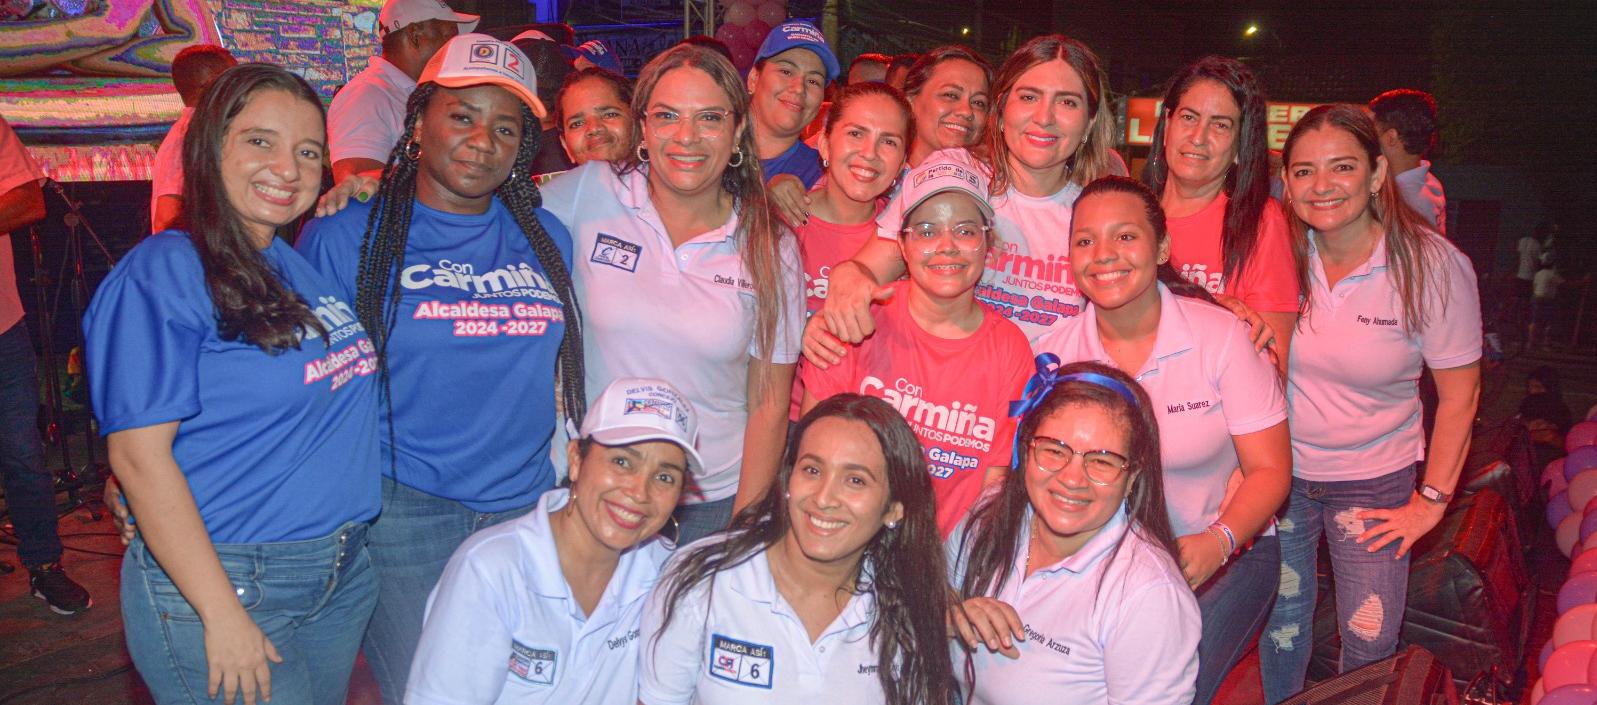 La candidata a la Alcaldía de Galapa Carmiña Navarro con algunas de las mujeres que la acompañaron